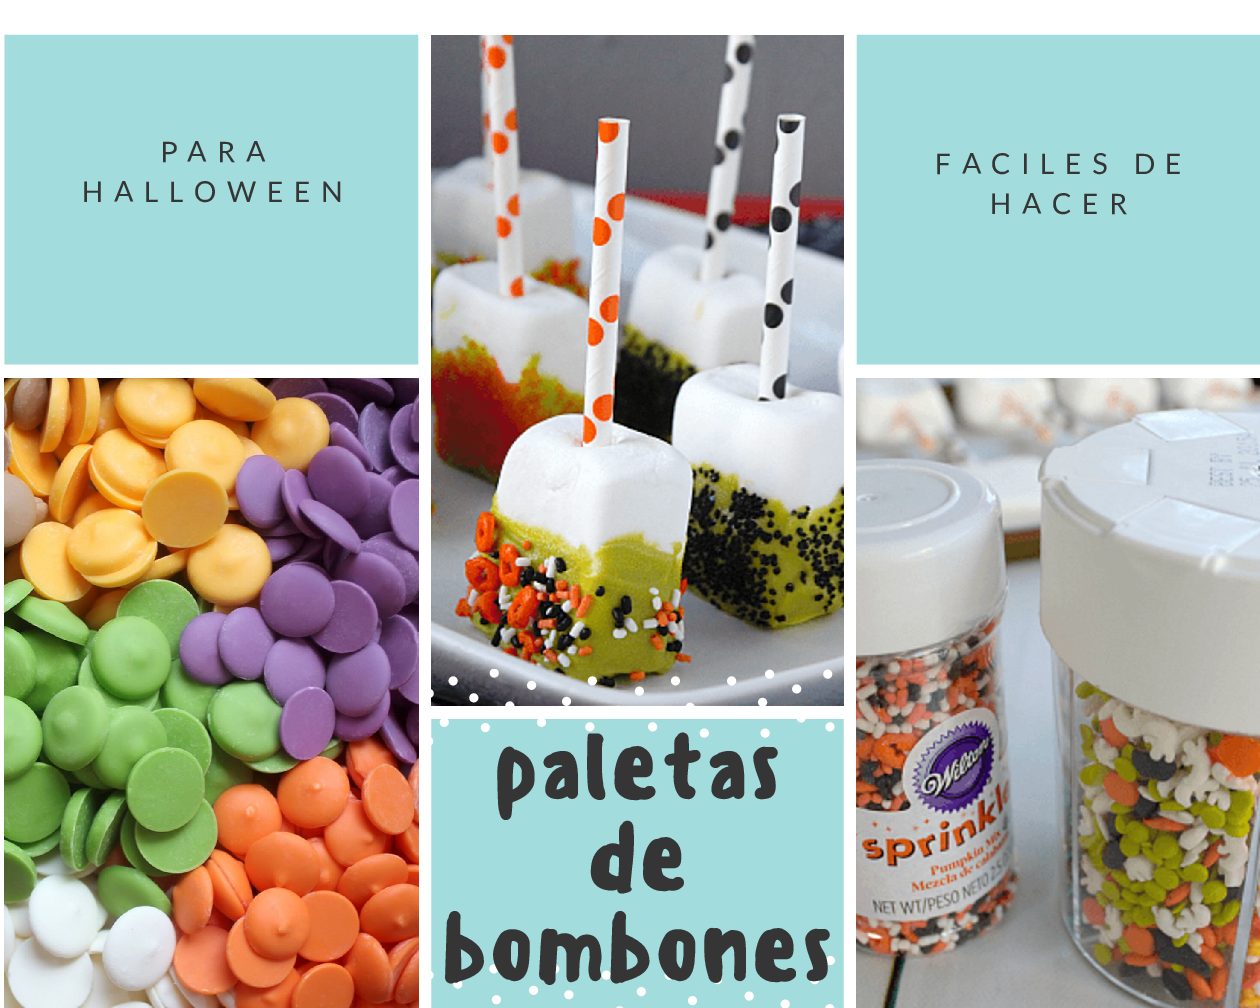 Paletas de Bombones de Halloween - Pasteles D' Lulú